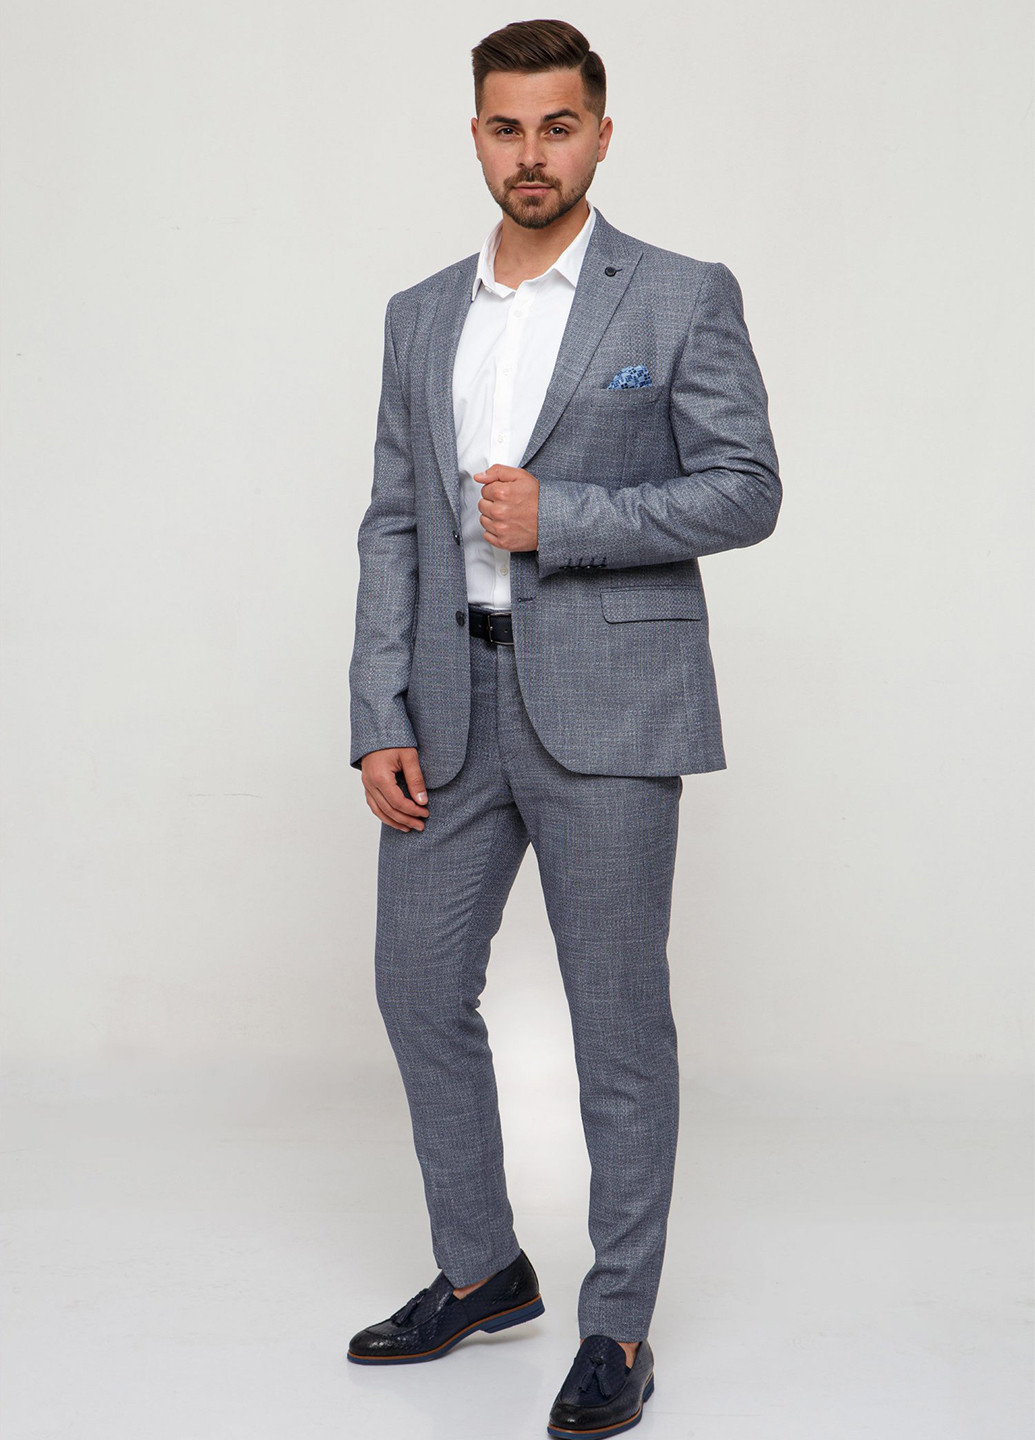 Серо-голубой демисезонный костюм (пиджак, брюки) брючный Trend Collection